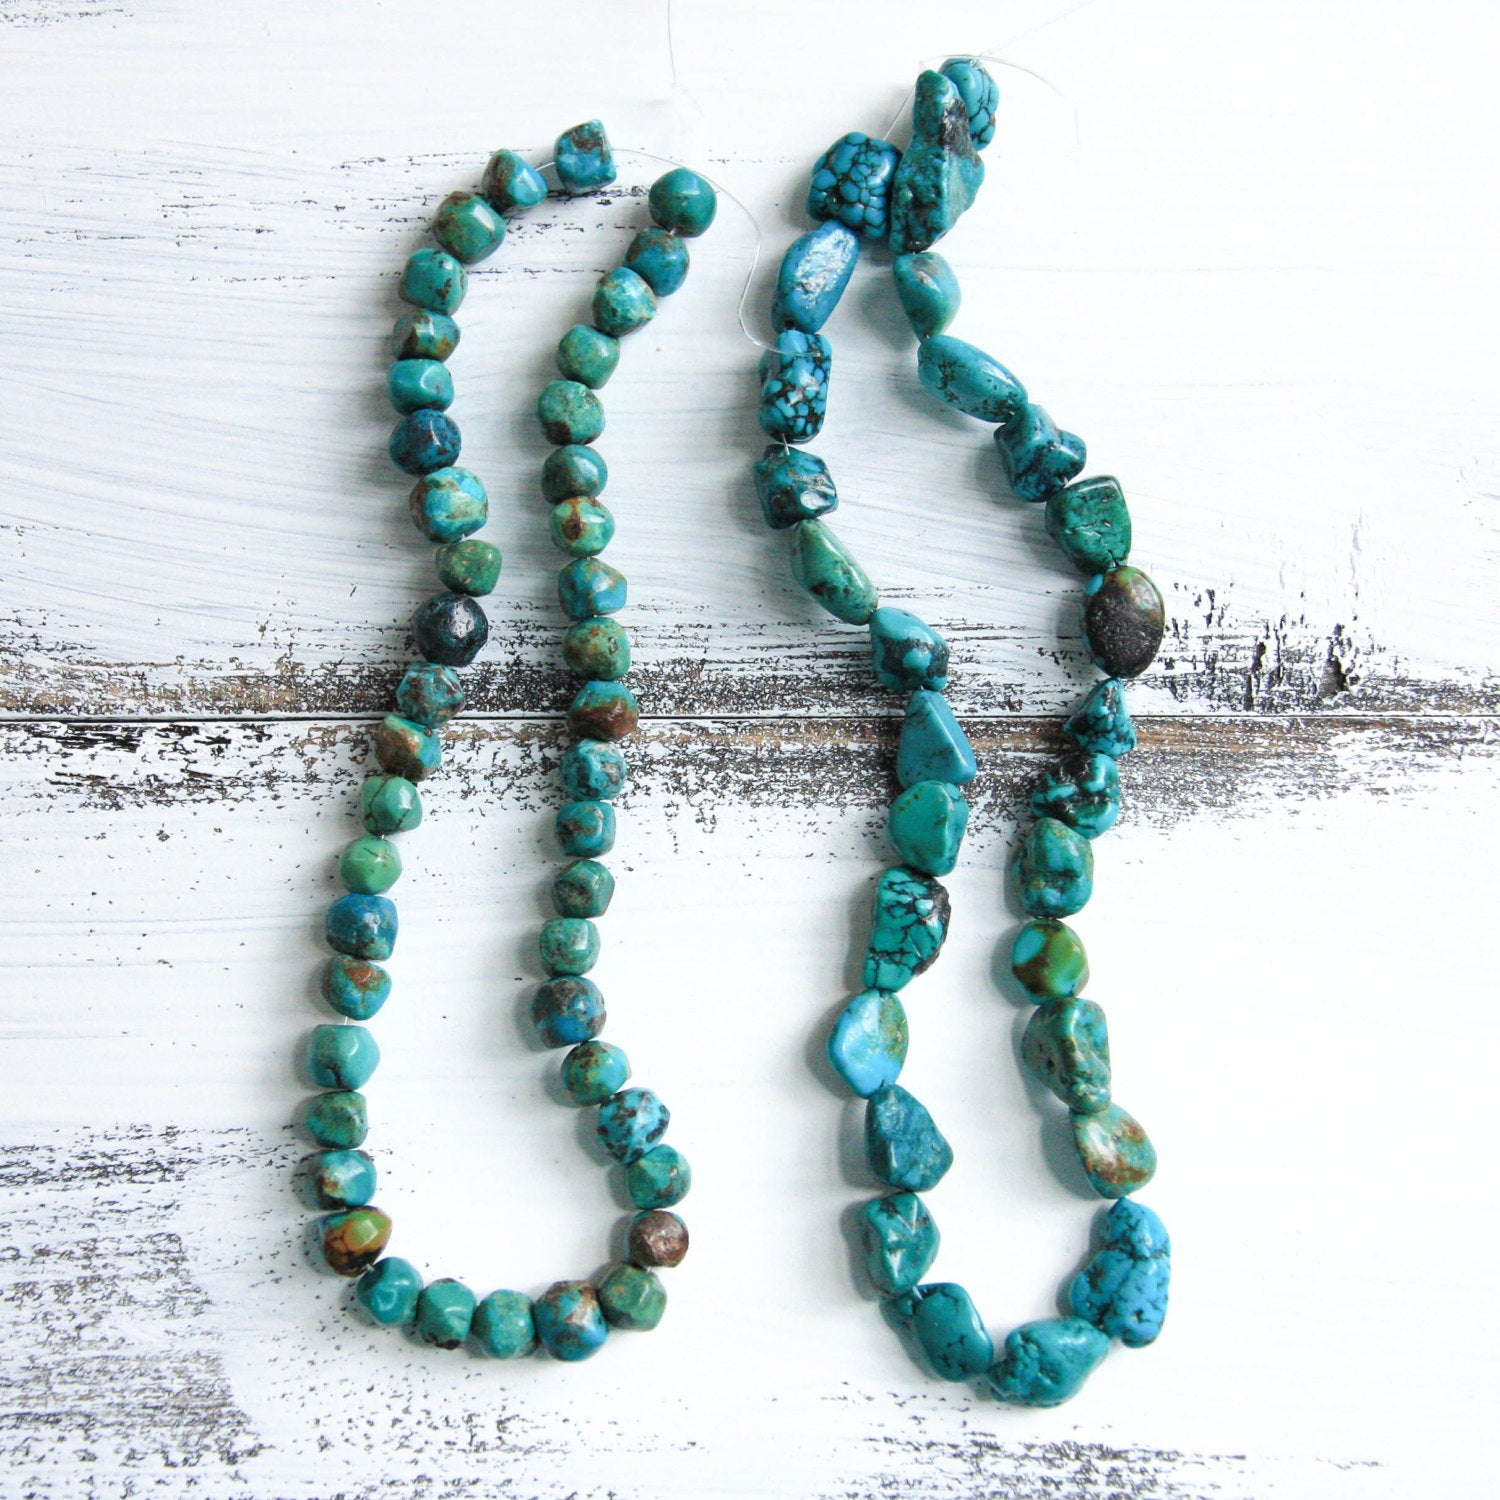 Peaceful Journey  Amazonite & Moonstone Mala Necklace with Genuine Turquoise